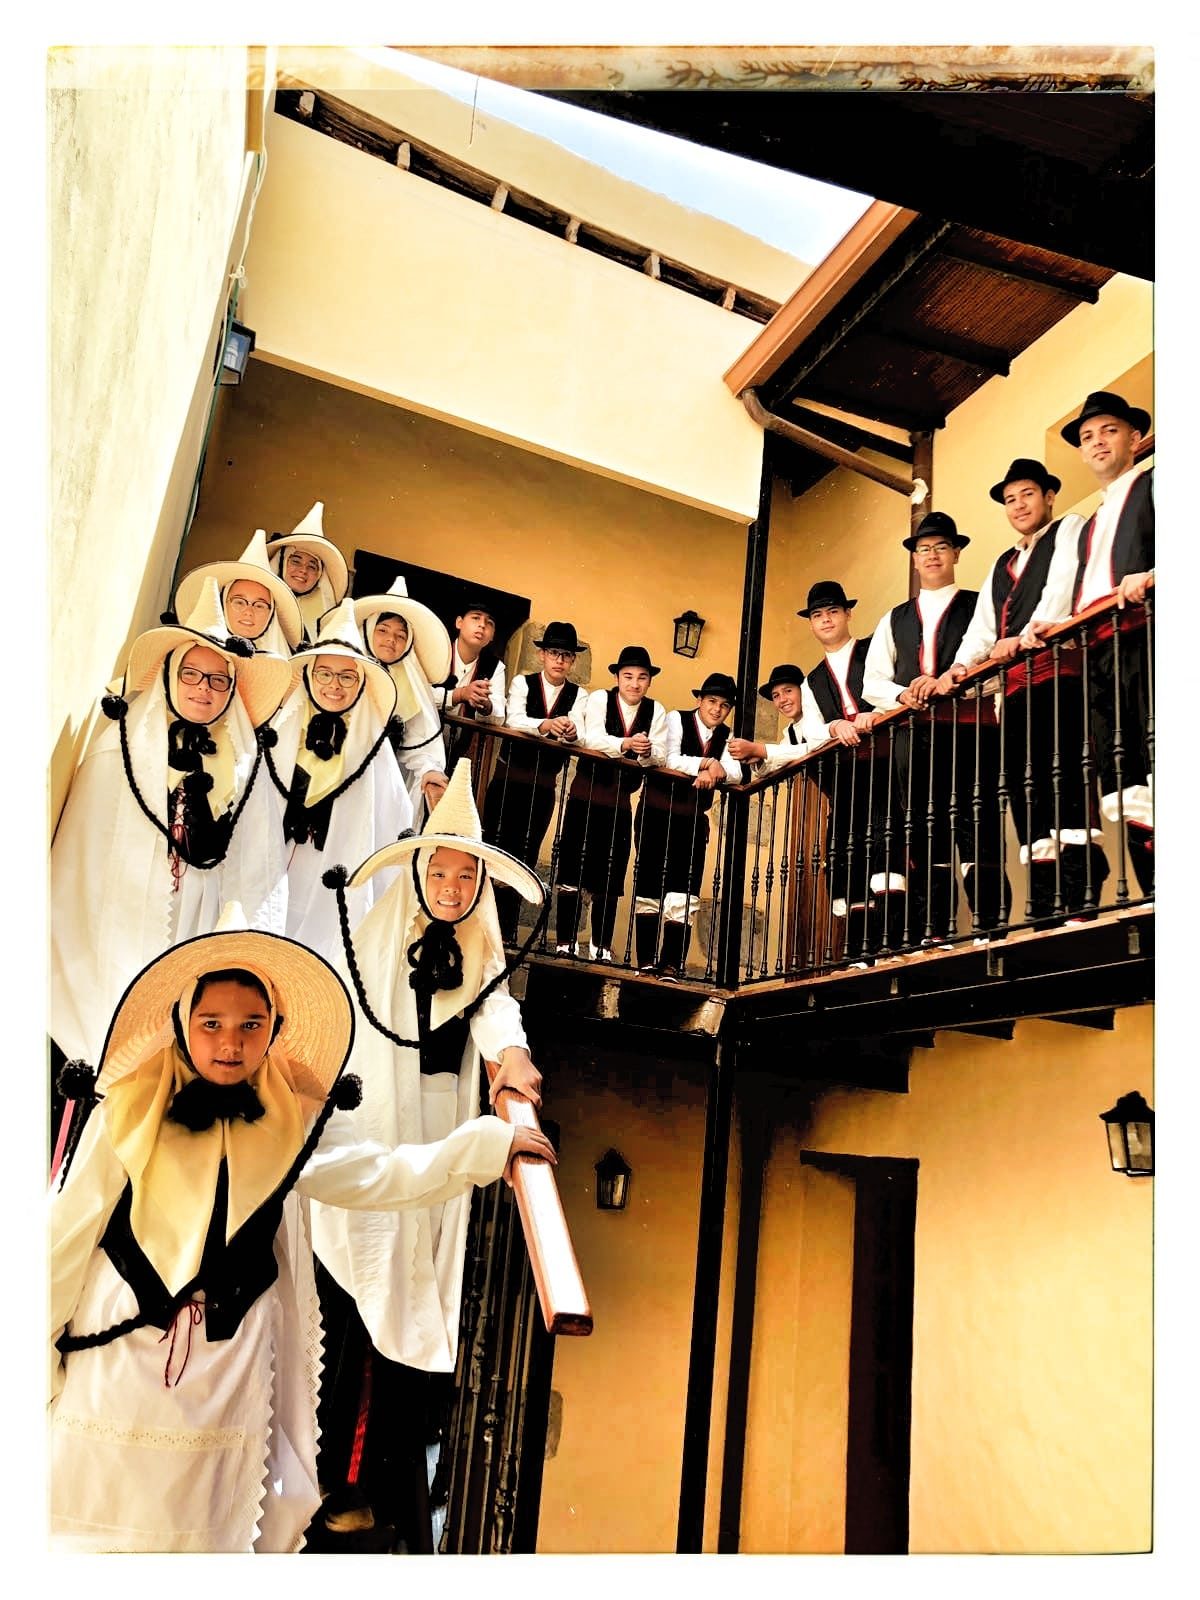 La Agrupación Folclórica Infantil ‘El Jable’ se trasladó a Gran Canaria para participar el XXII Festival Infantil de Folclore